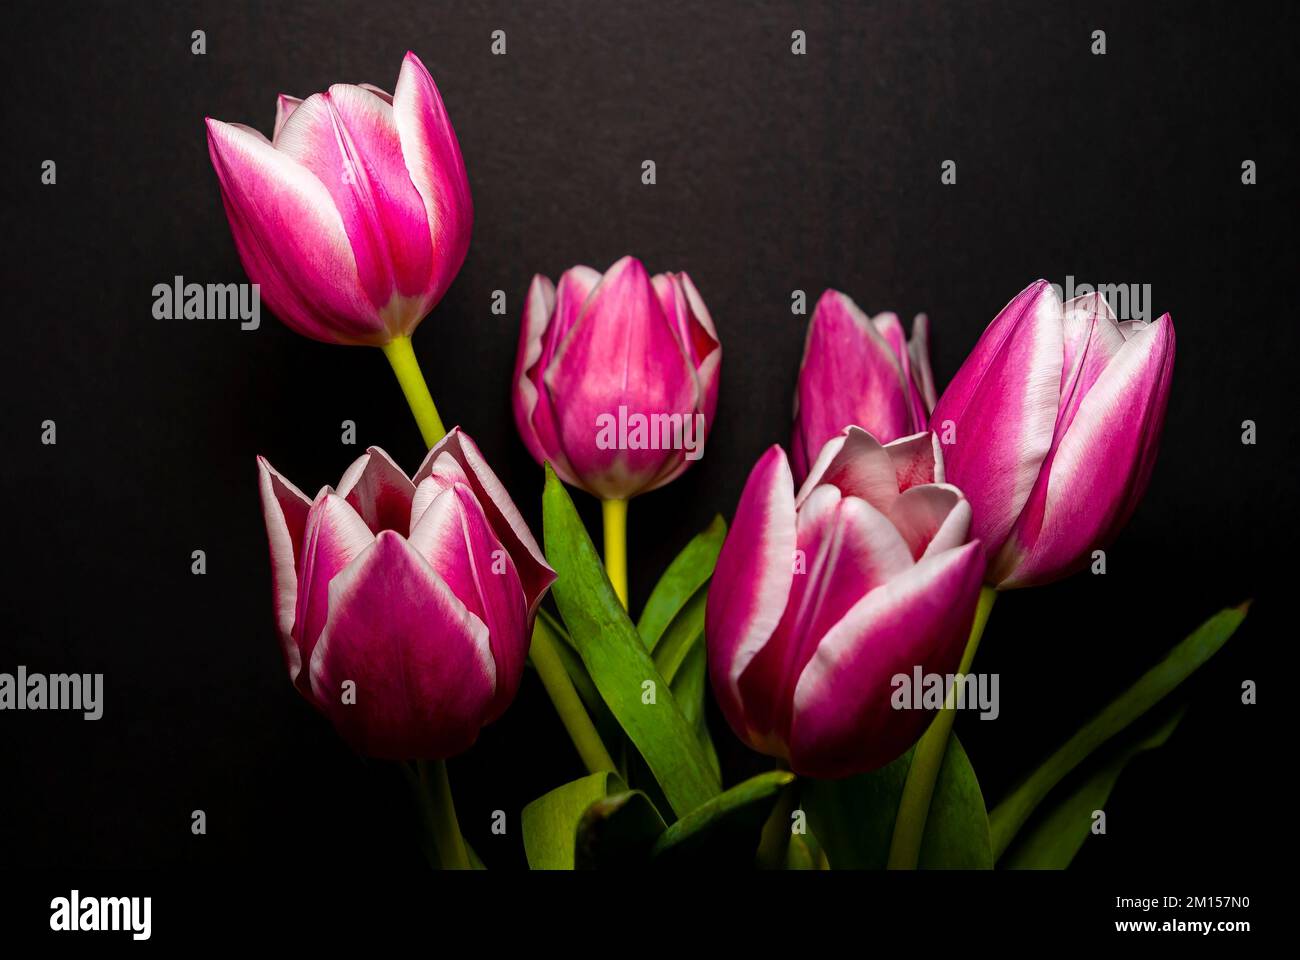 Fleurs coupées dans un vase, bouquet de tulipes sur fond noir. Schnittblumen in einer vase, Strauß Tulpen vor schwarzem hintergrund freigest Banque D'Images